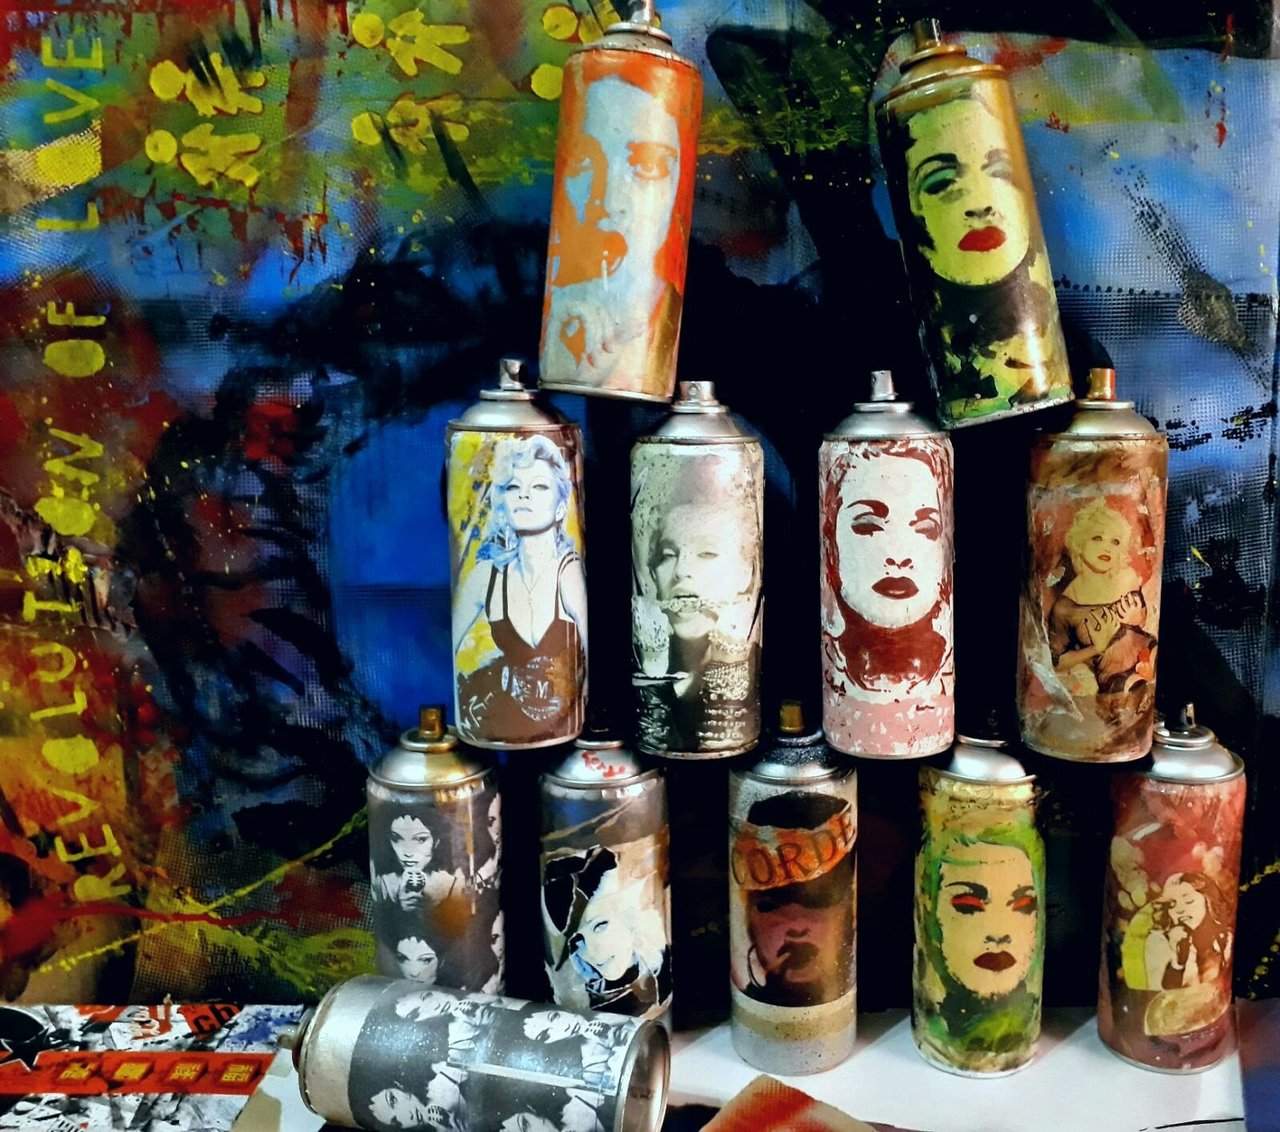 Rebel heart spray cans #Madonna by #CORDEart  #collage #streetart #graffiti  #arte #madonnafans #rebelheart #rebelhearttour #art #popart https://t.co/ONxmCDOFER